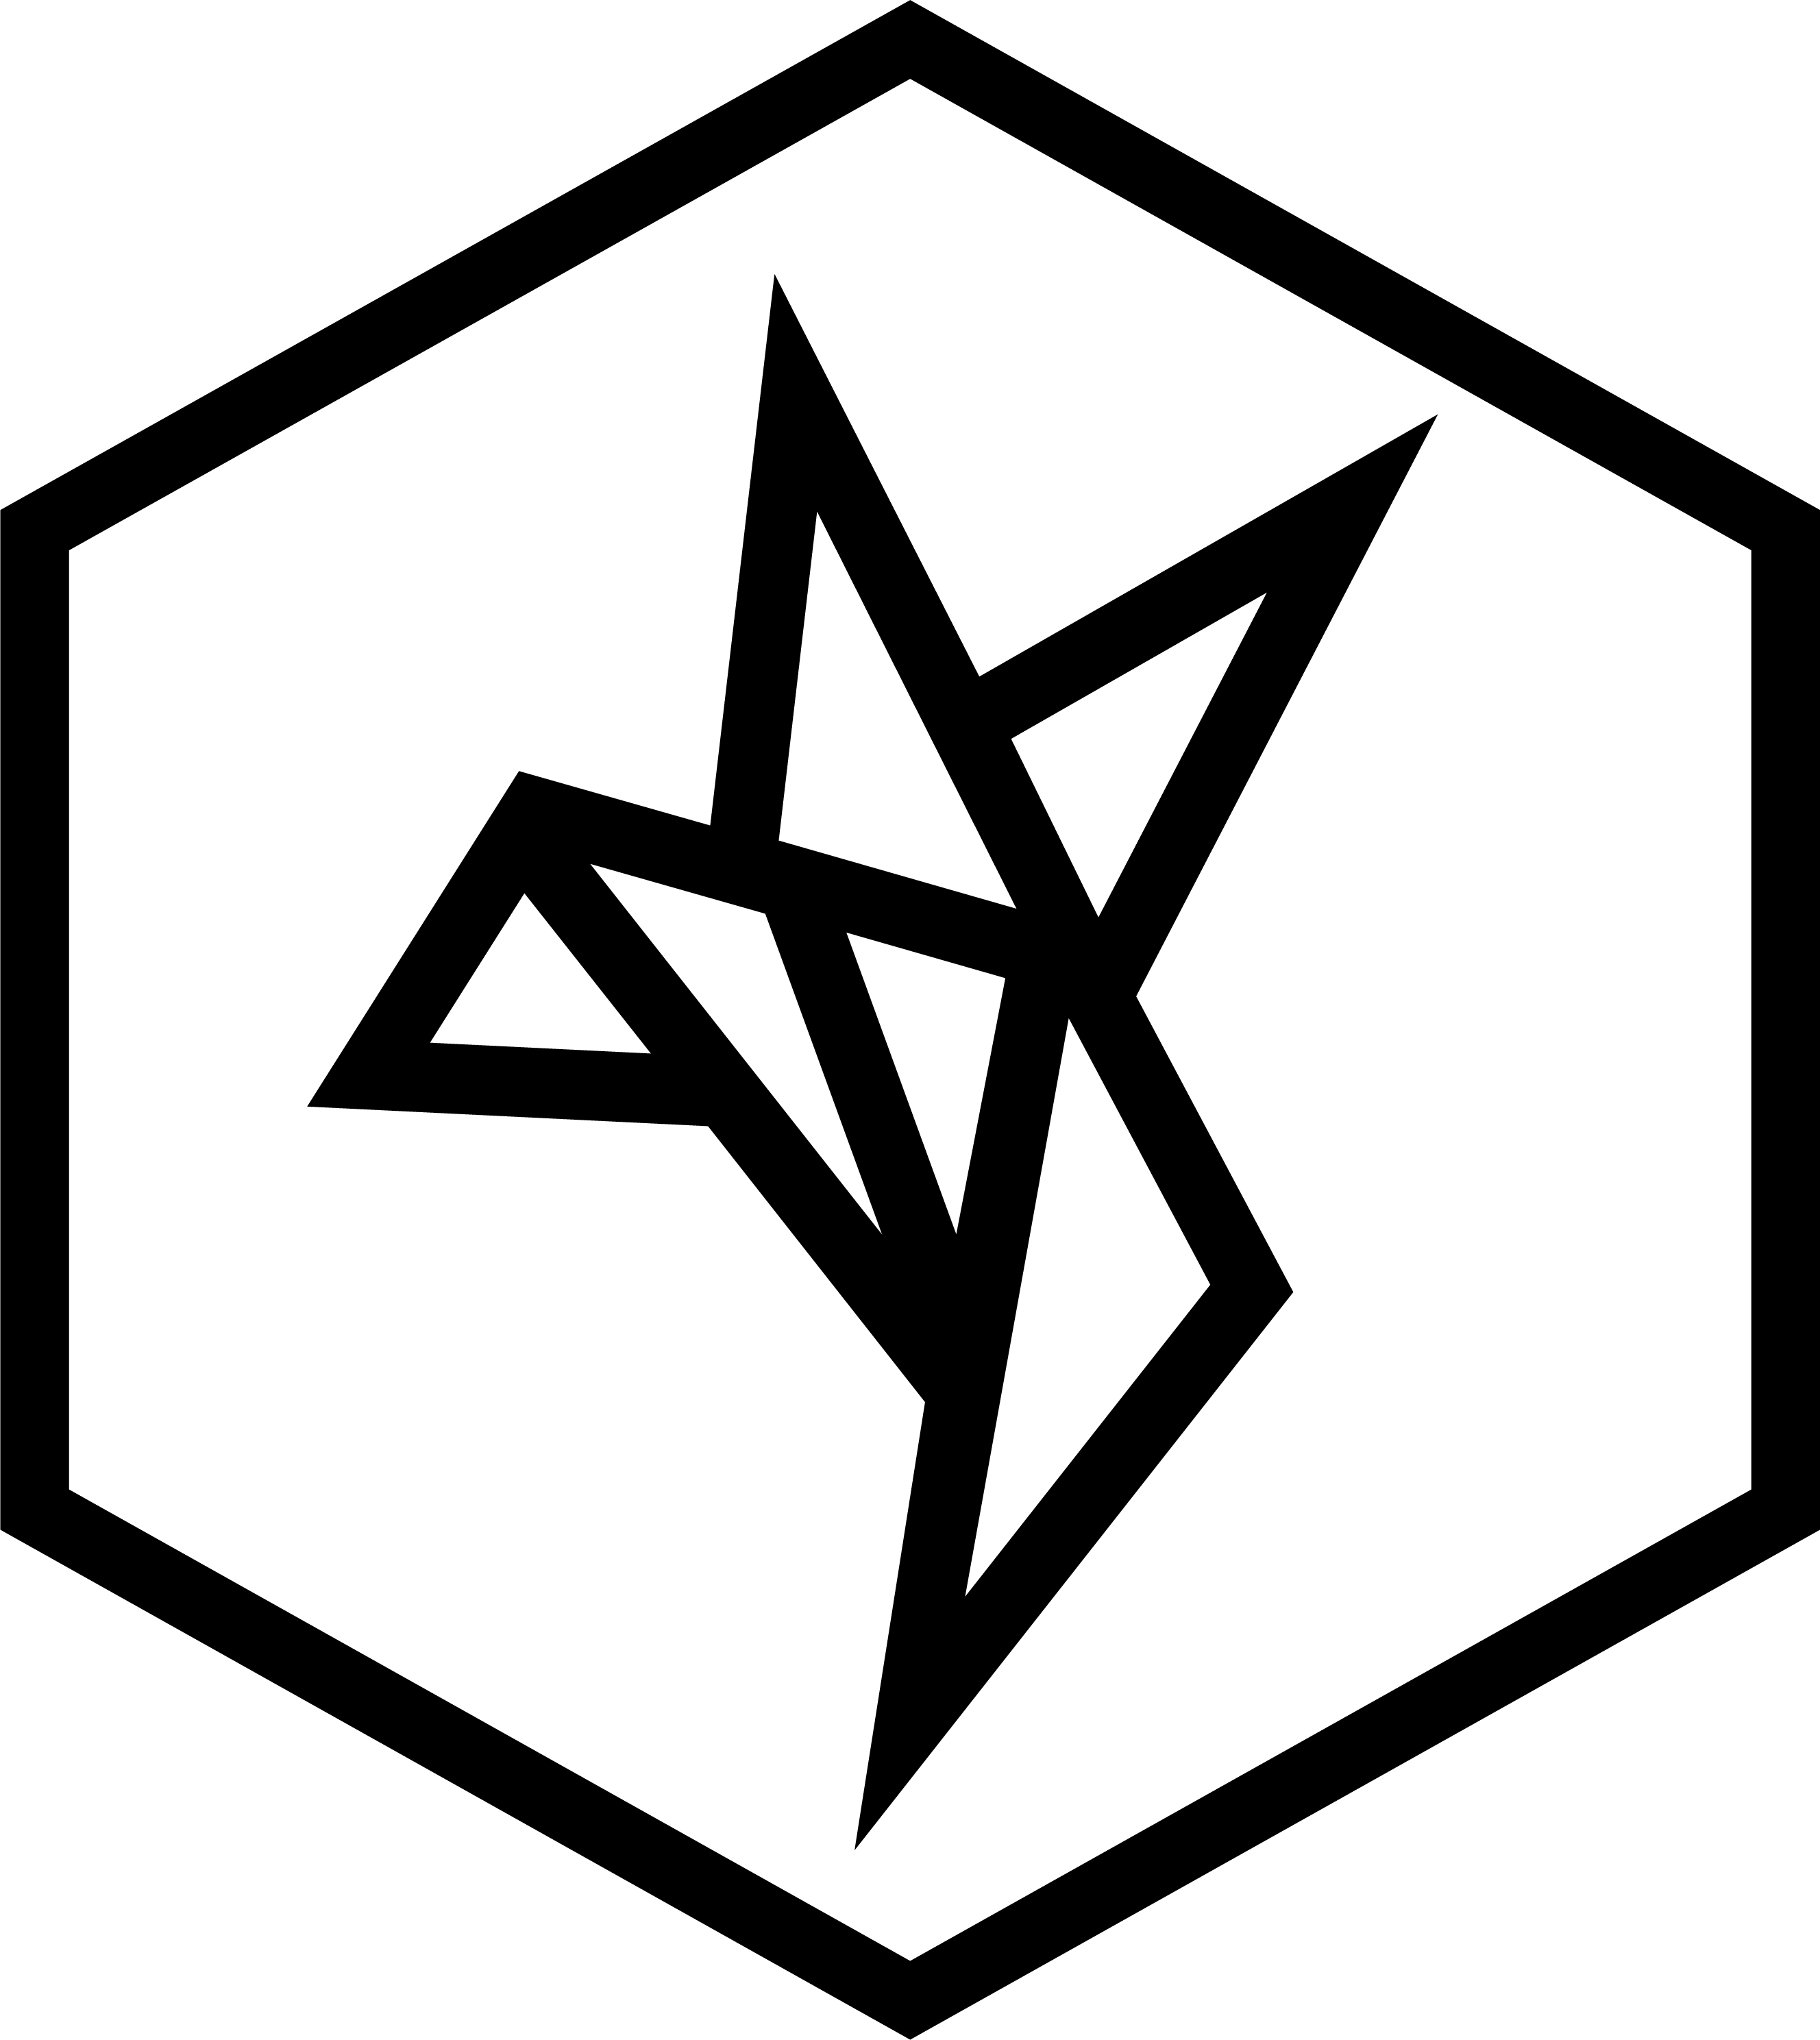 mindtwo logo